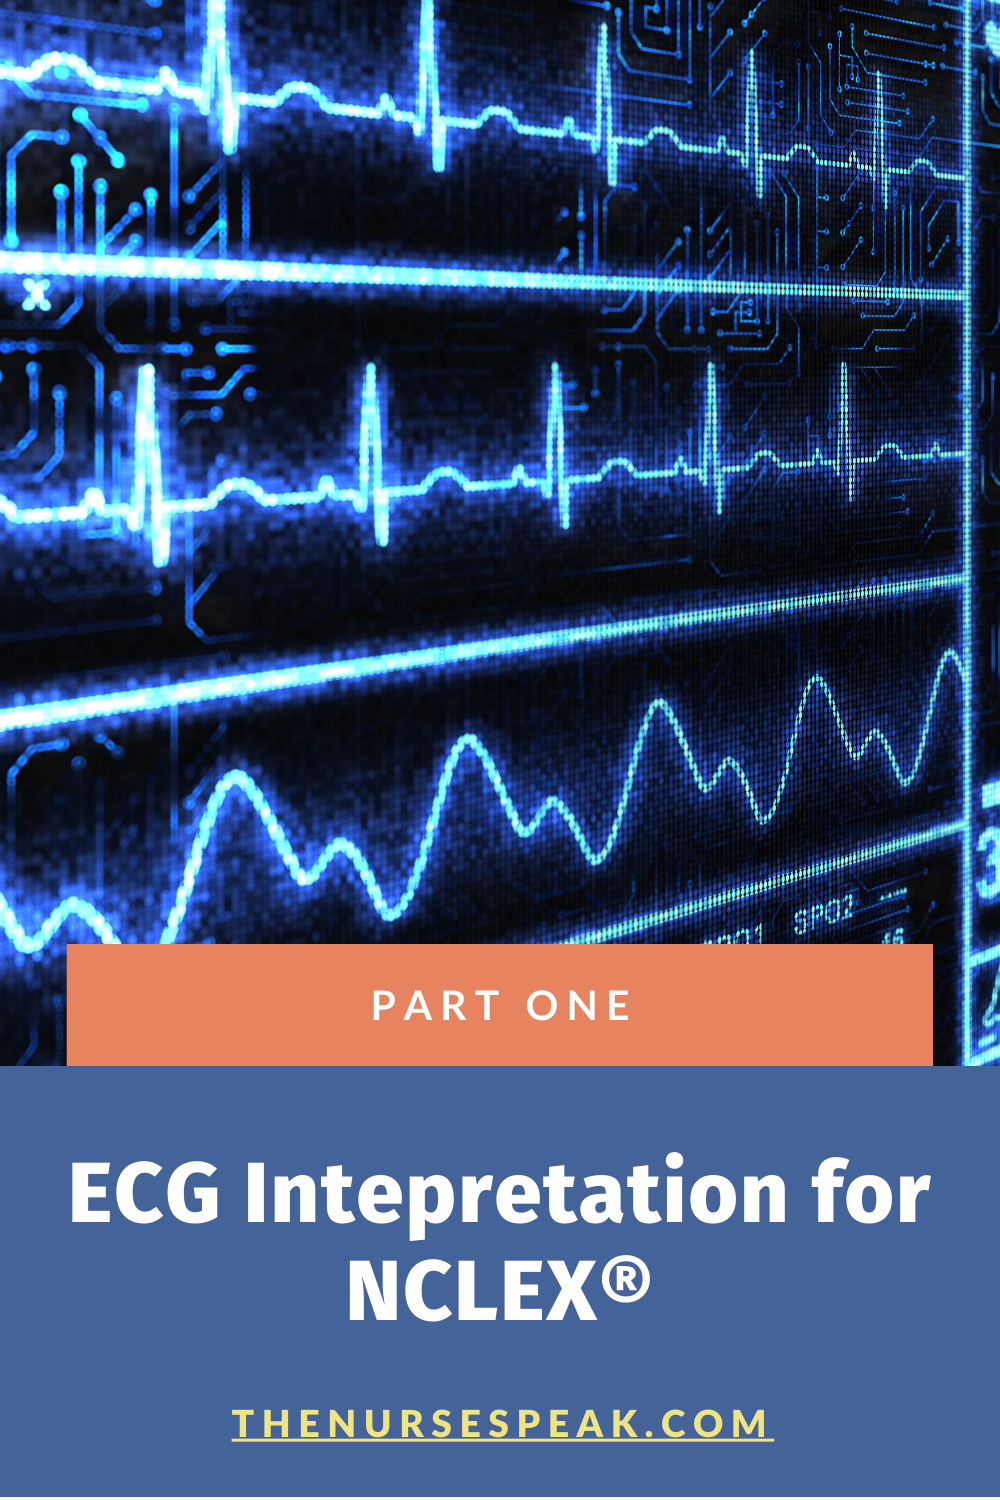 ECG Interpretation for NCLEX: Part One